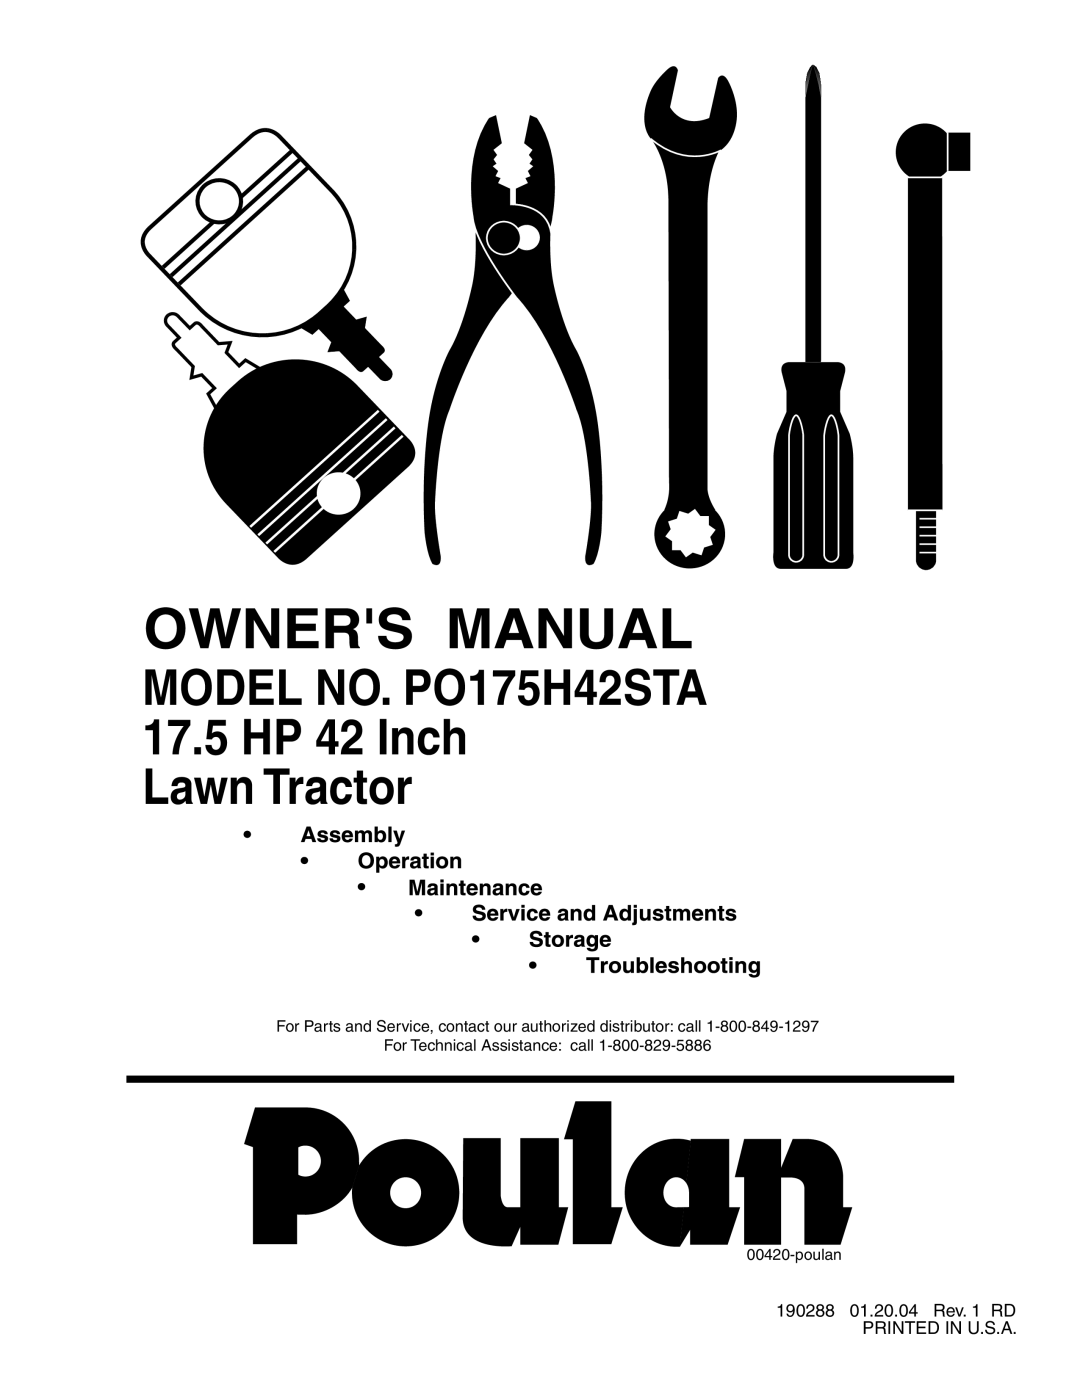 Poulan manual MODEL NO. PO175H42STA 17.5 HP 42 Inch Lawn Tractor, poulan 